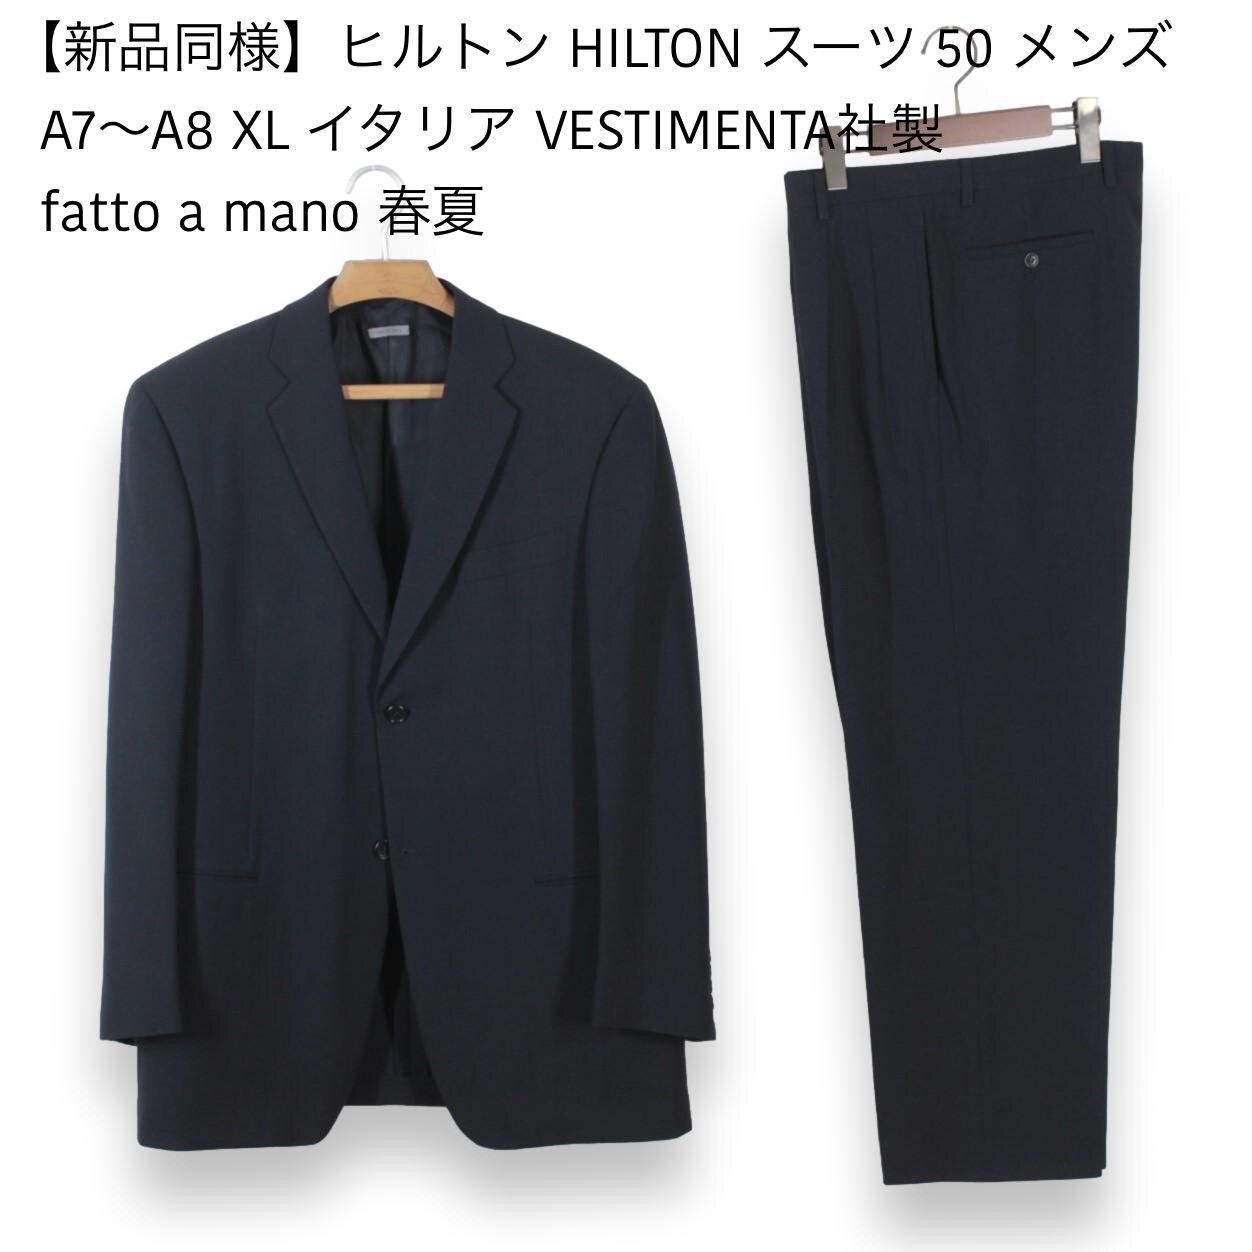 【新品同様】ヒルトン HILTON スーツ 50 メンズ A7～A8 XL イタリア製 VESTIMENTA社製 fatto a mano